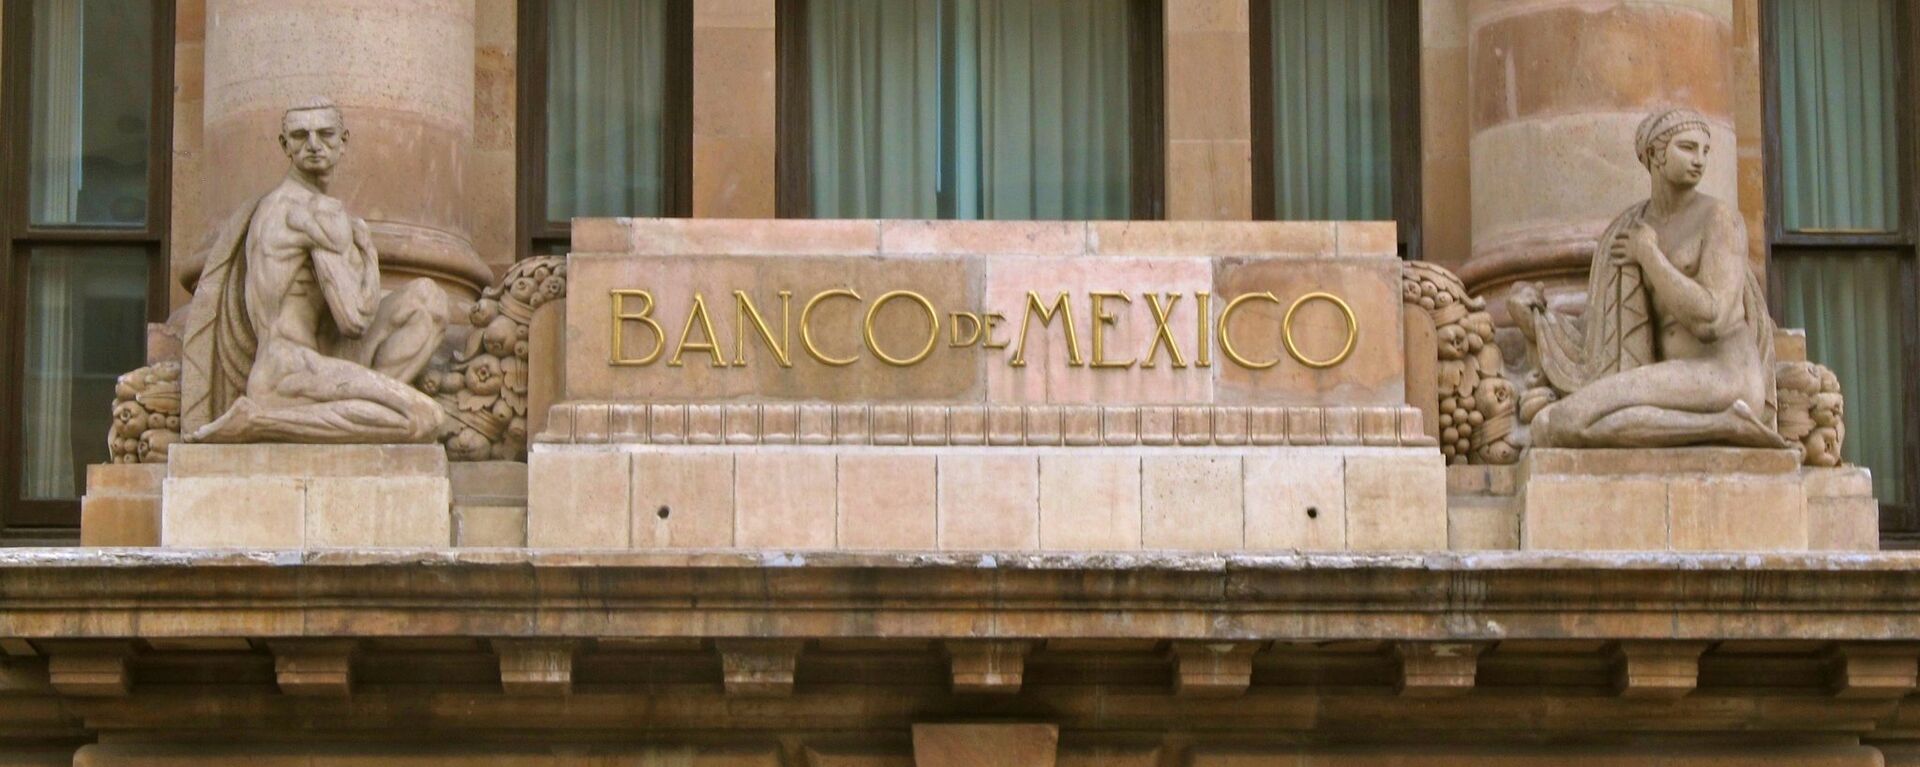 La fachada del Banco de México - Sputnik Mundo, 1920, 26.11.2020